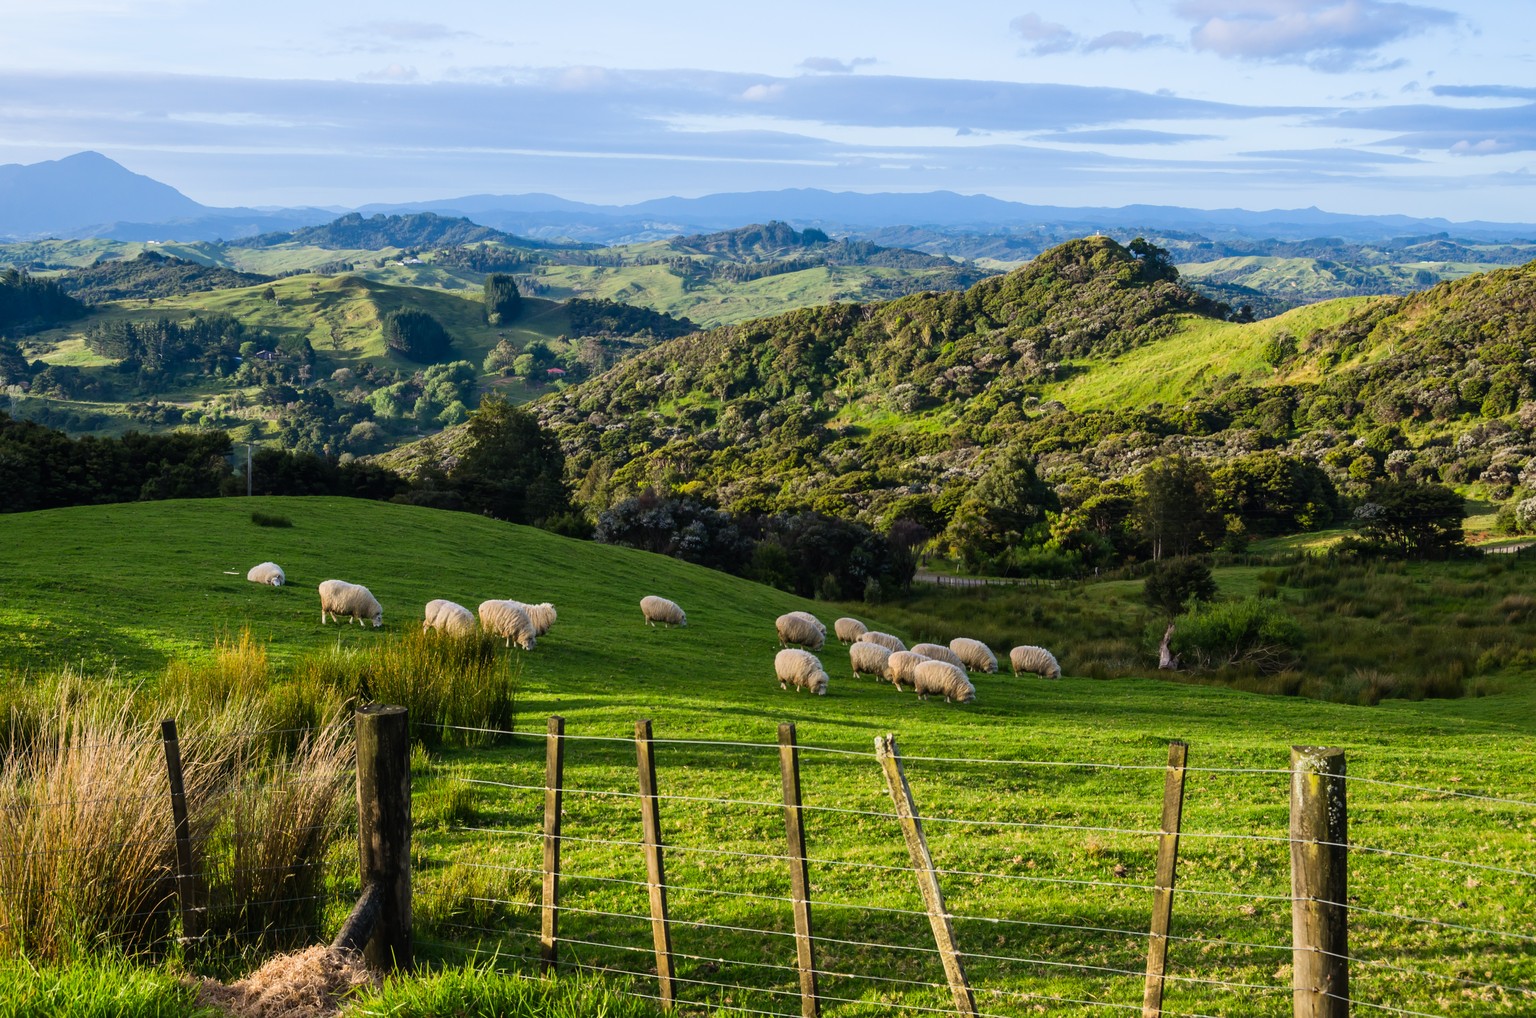 Neuseeland hat etwa 4,5 Millionen Einwohner. Das ergibt eine Menge Schafe.